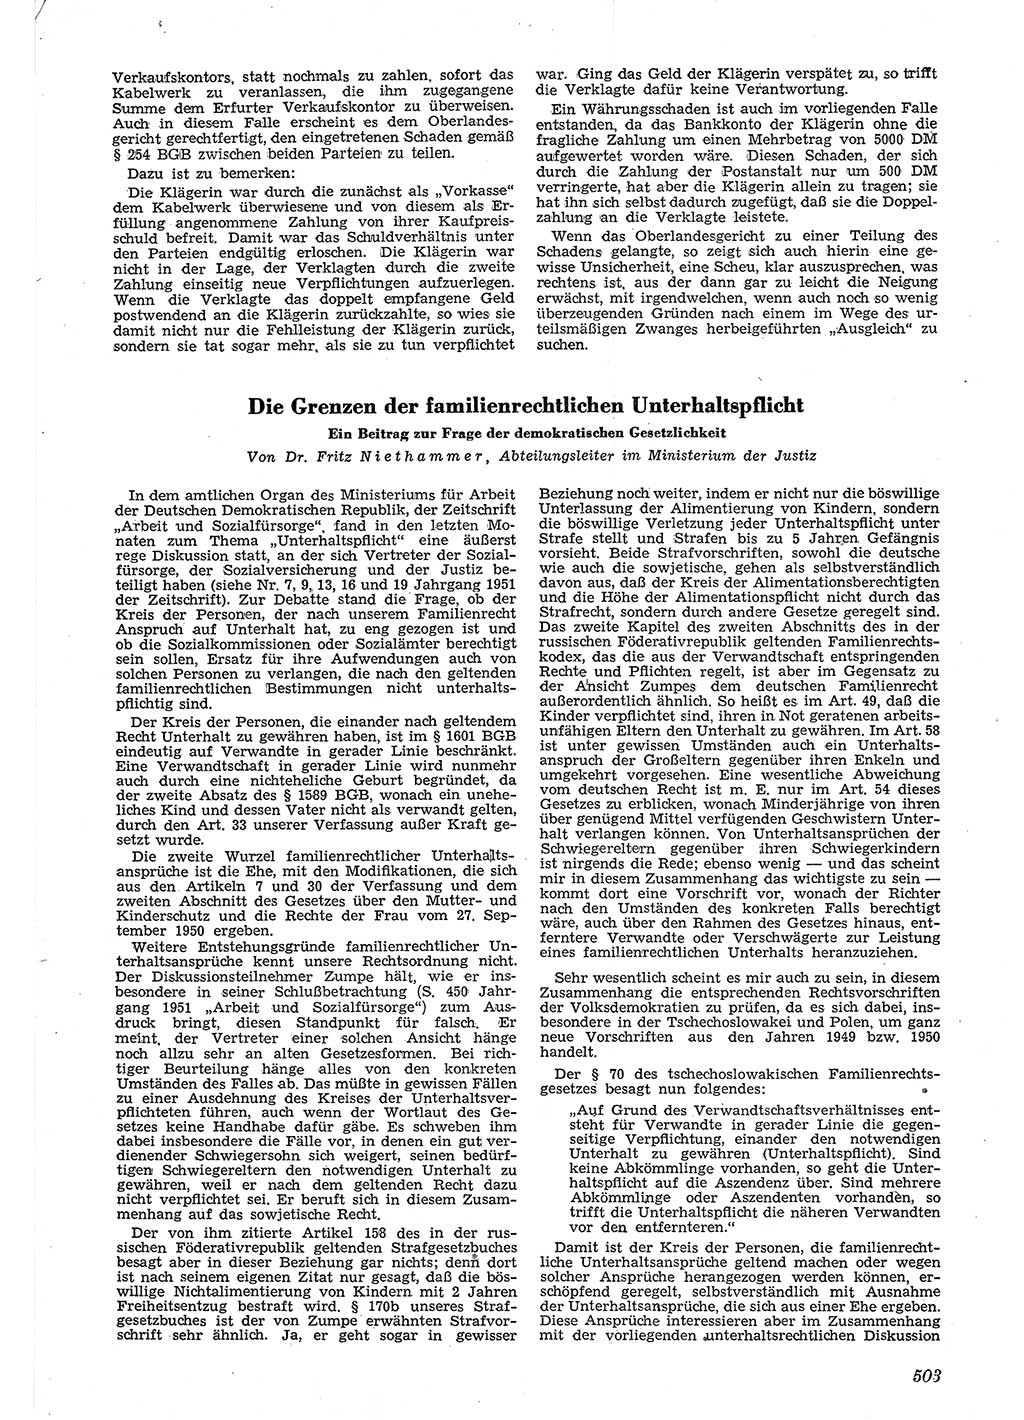 Neue Justiz (NJ), Zeitschrift für Recht und Rechtswissenschaft [Deutsche Demokratische Republik (DDR)], 5. Jahrgang 1951, Seite 503 (NJ DDR 1951, S. 503)